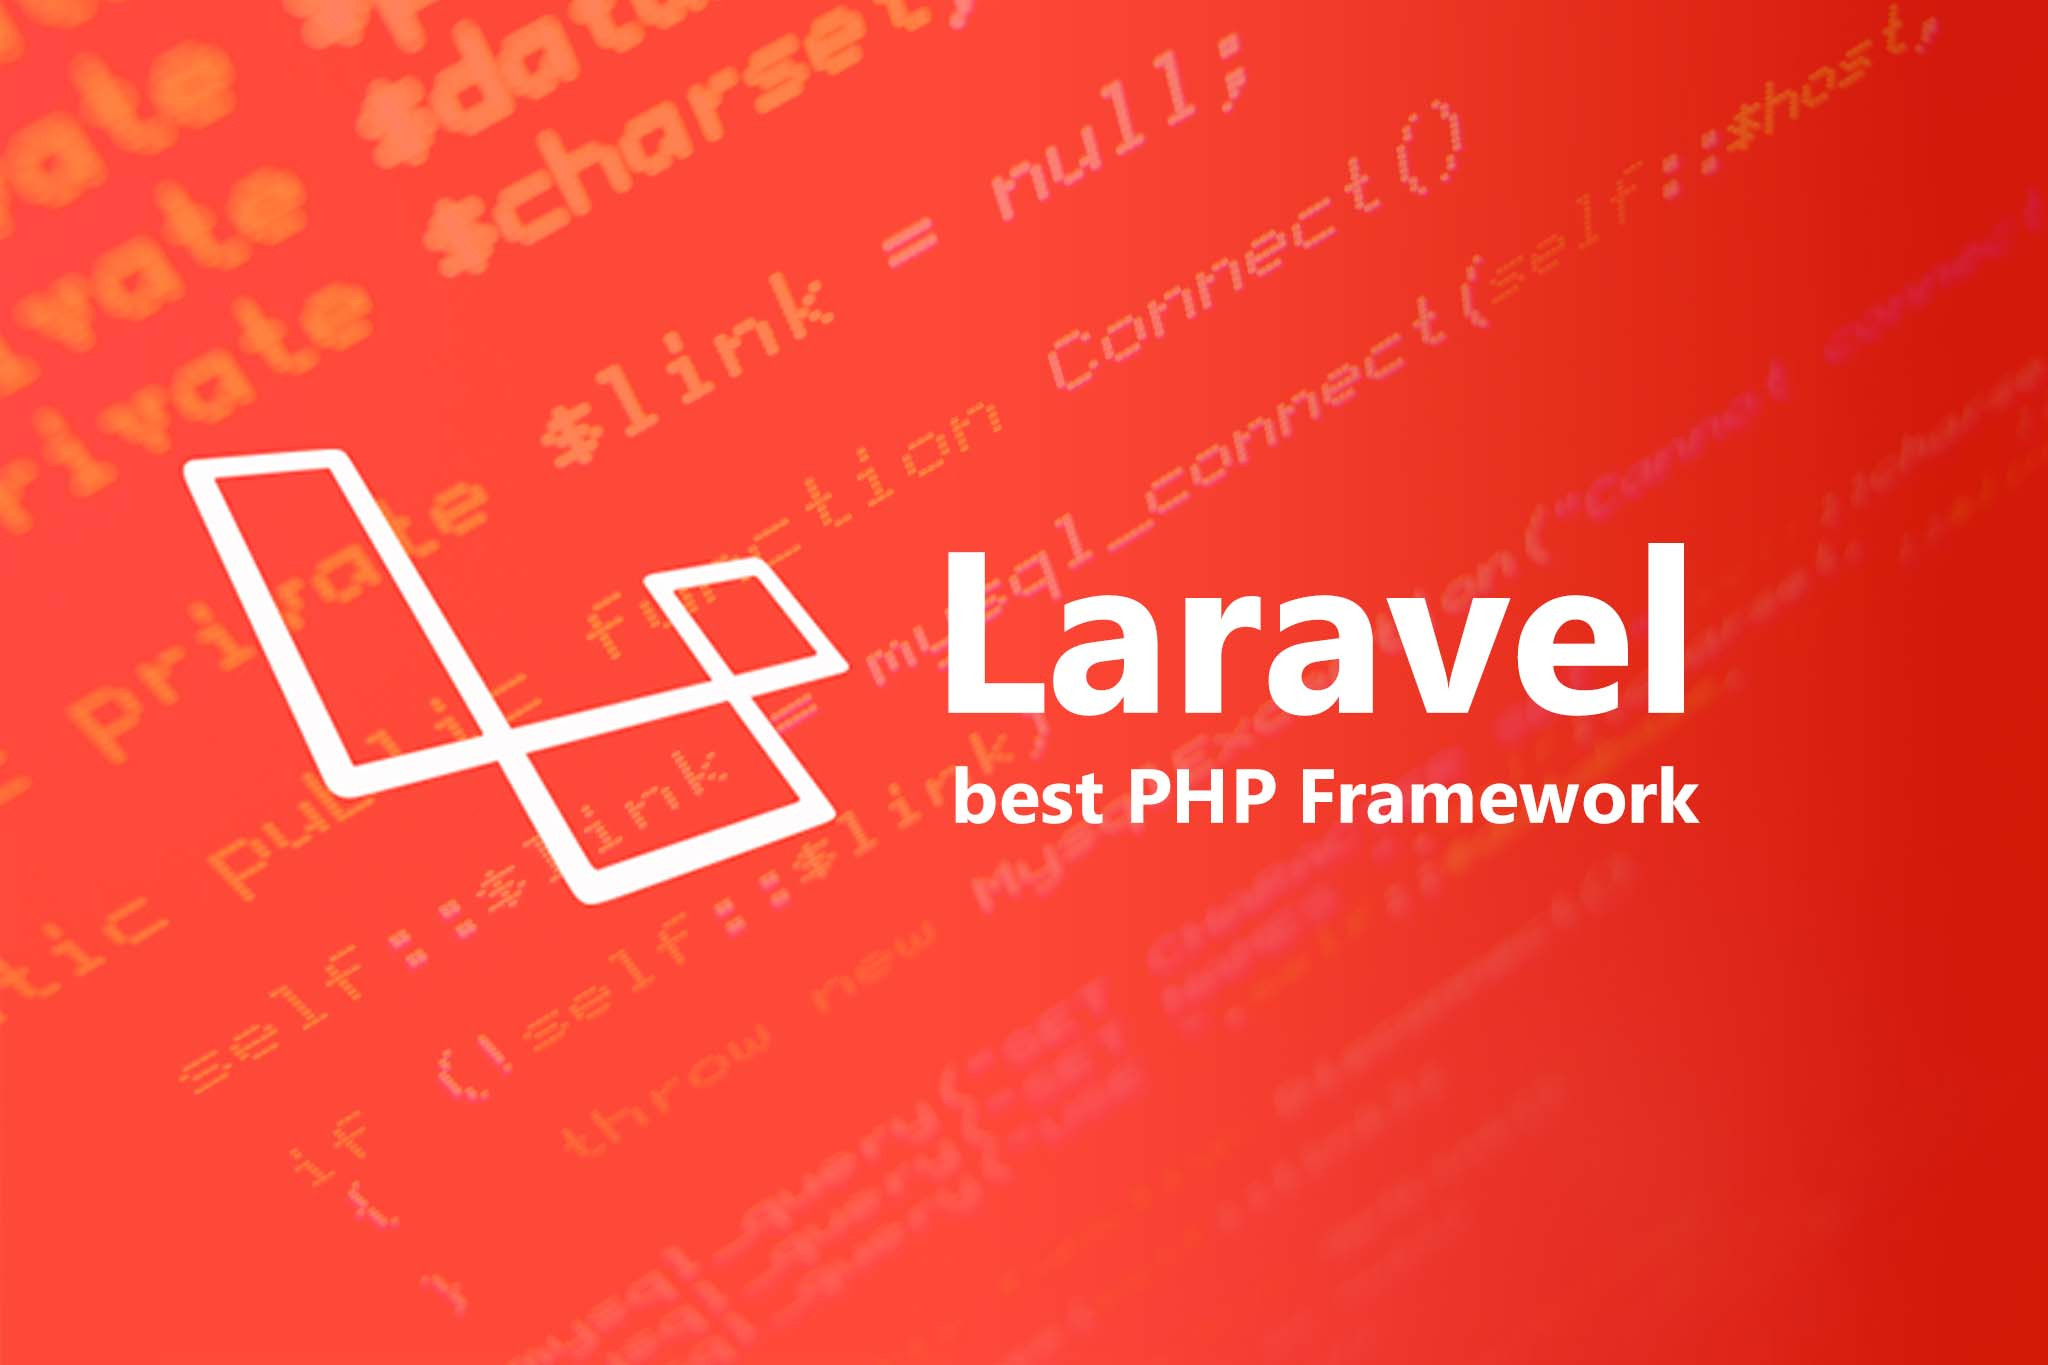 Laravel_best_PHP_Framework_1-1801-47e42f.jpg